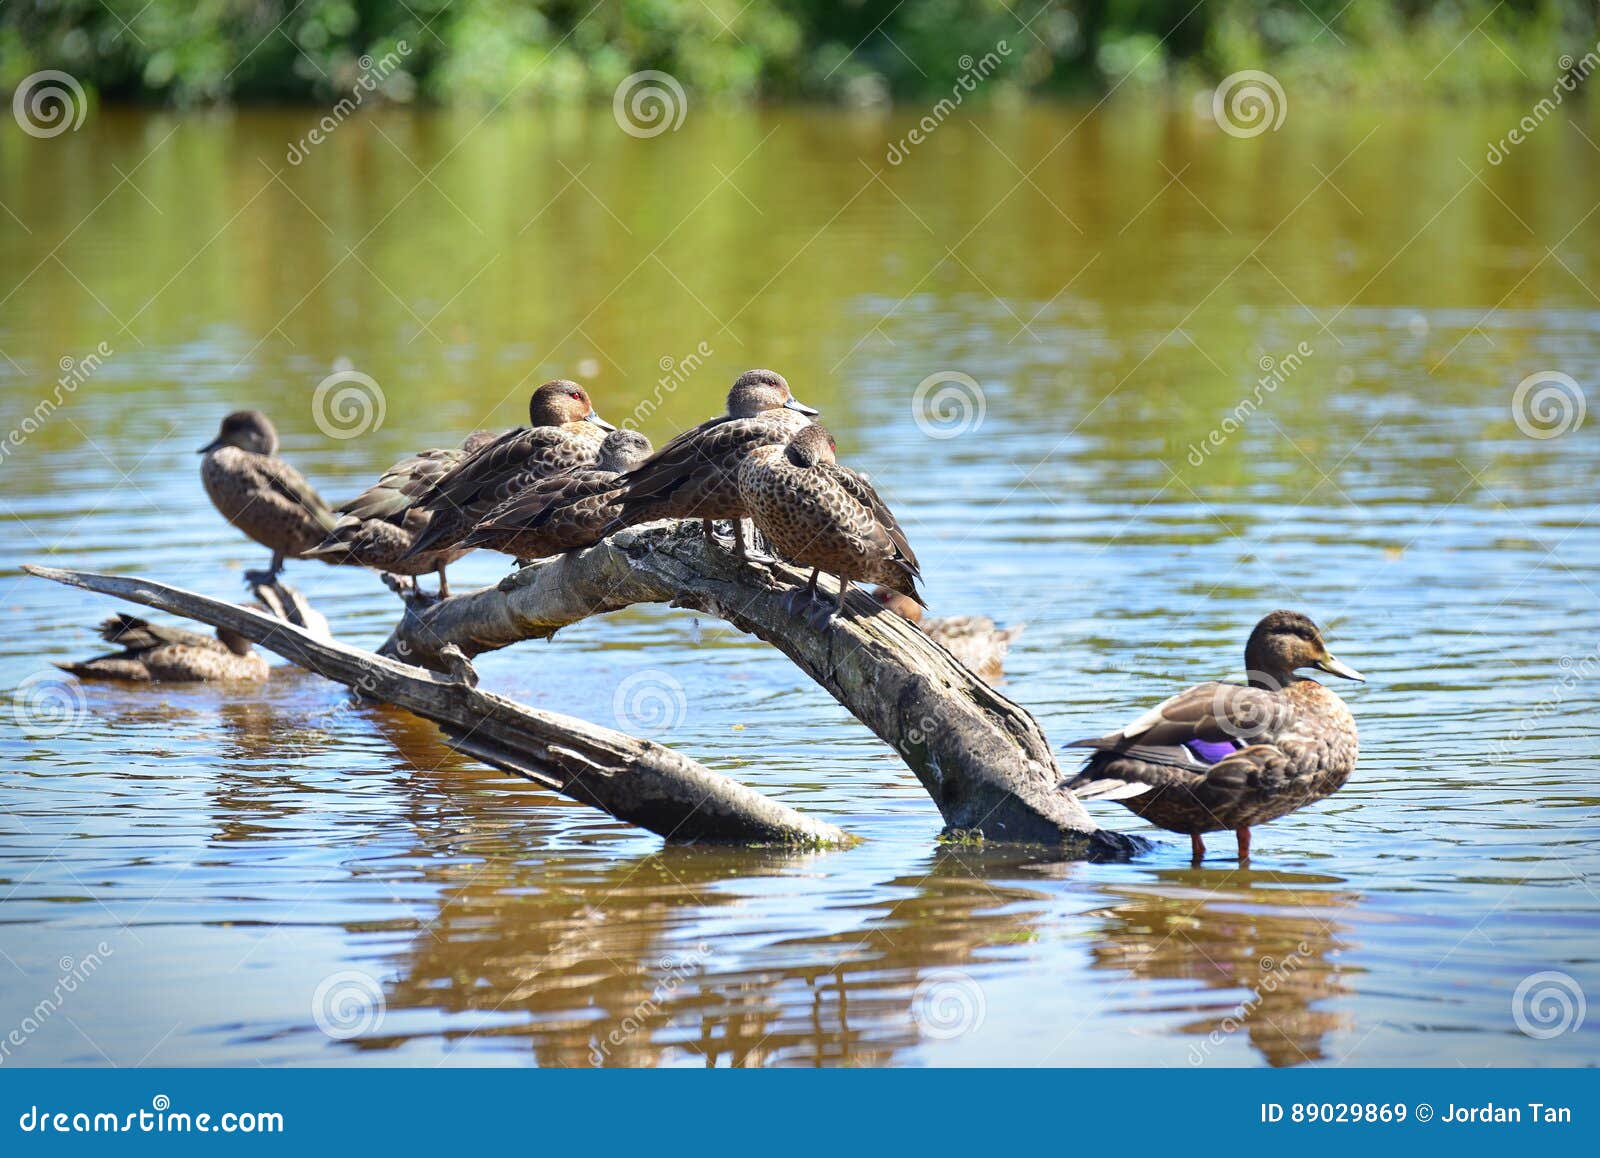 flock of ducks in travis wetland nature heritage park in new zealand